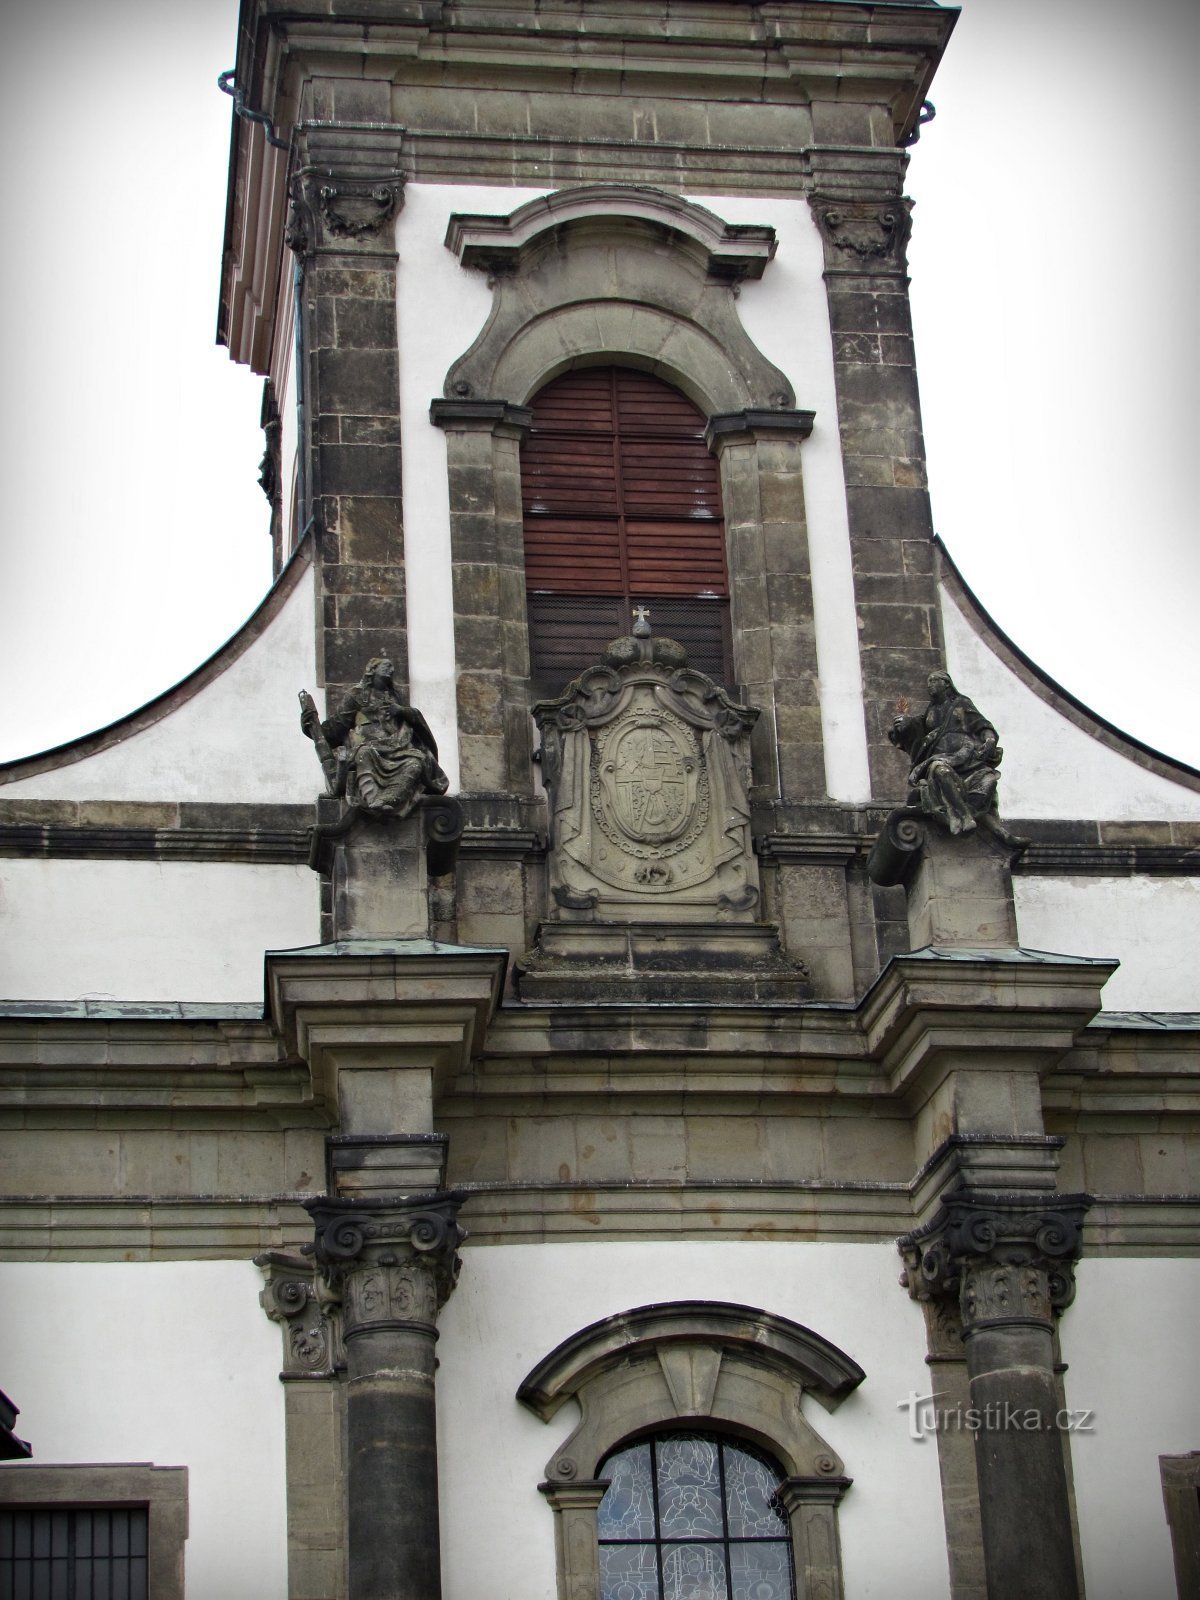 Ústí nad Orlicí - el edificio sagrado más importante